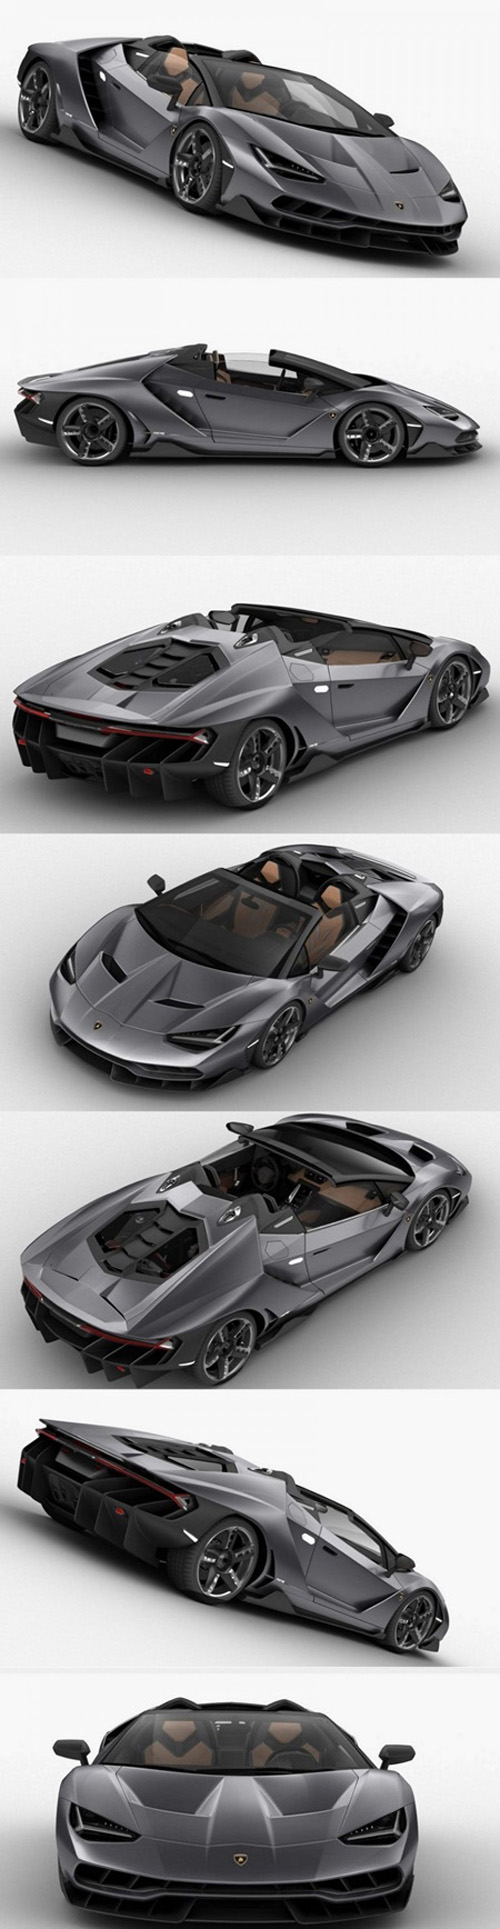 Lamborghini Centenario 2017 3D Model